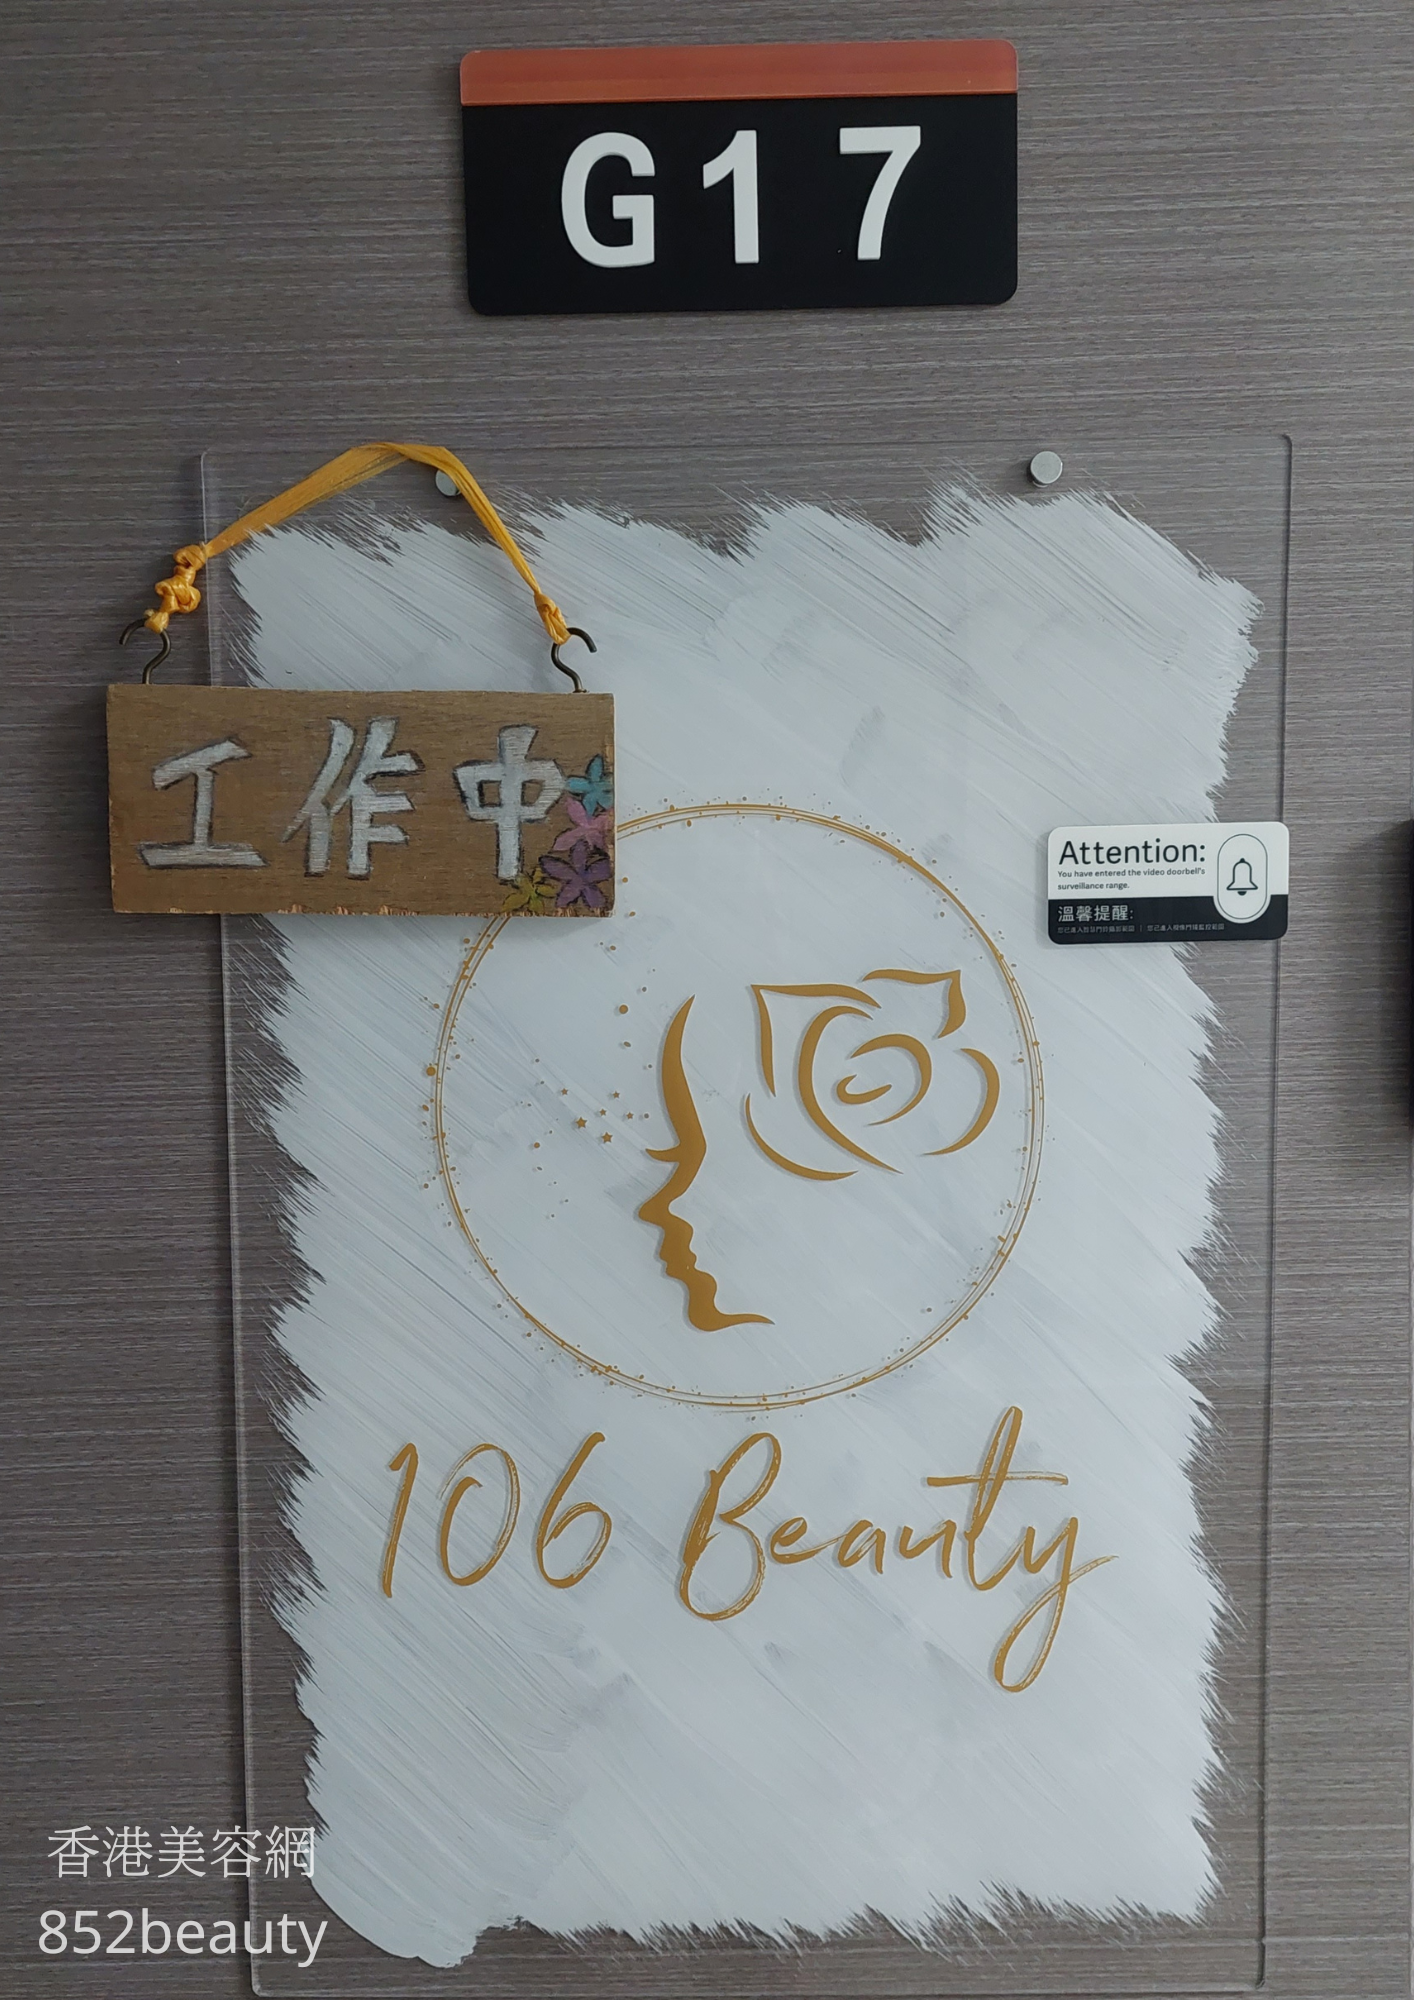 美容院: 106 Beauty